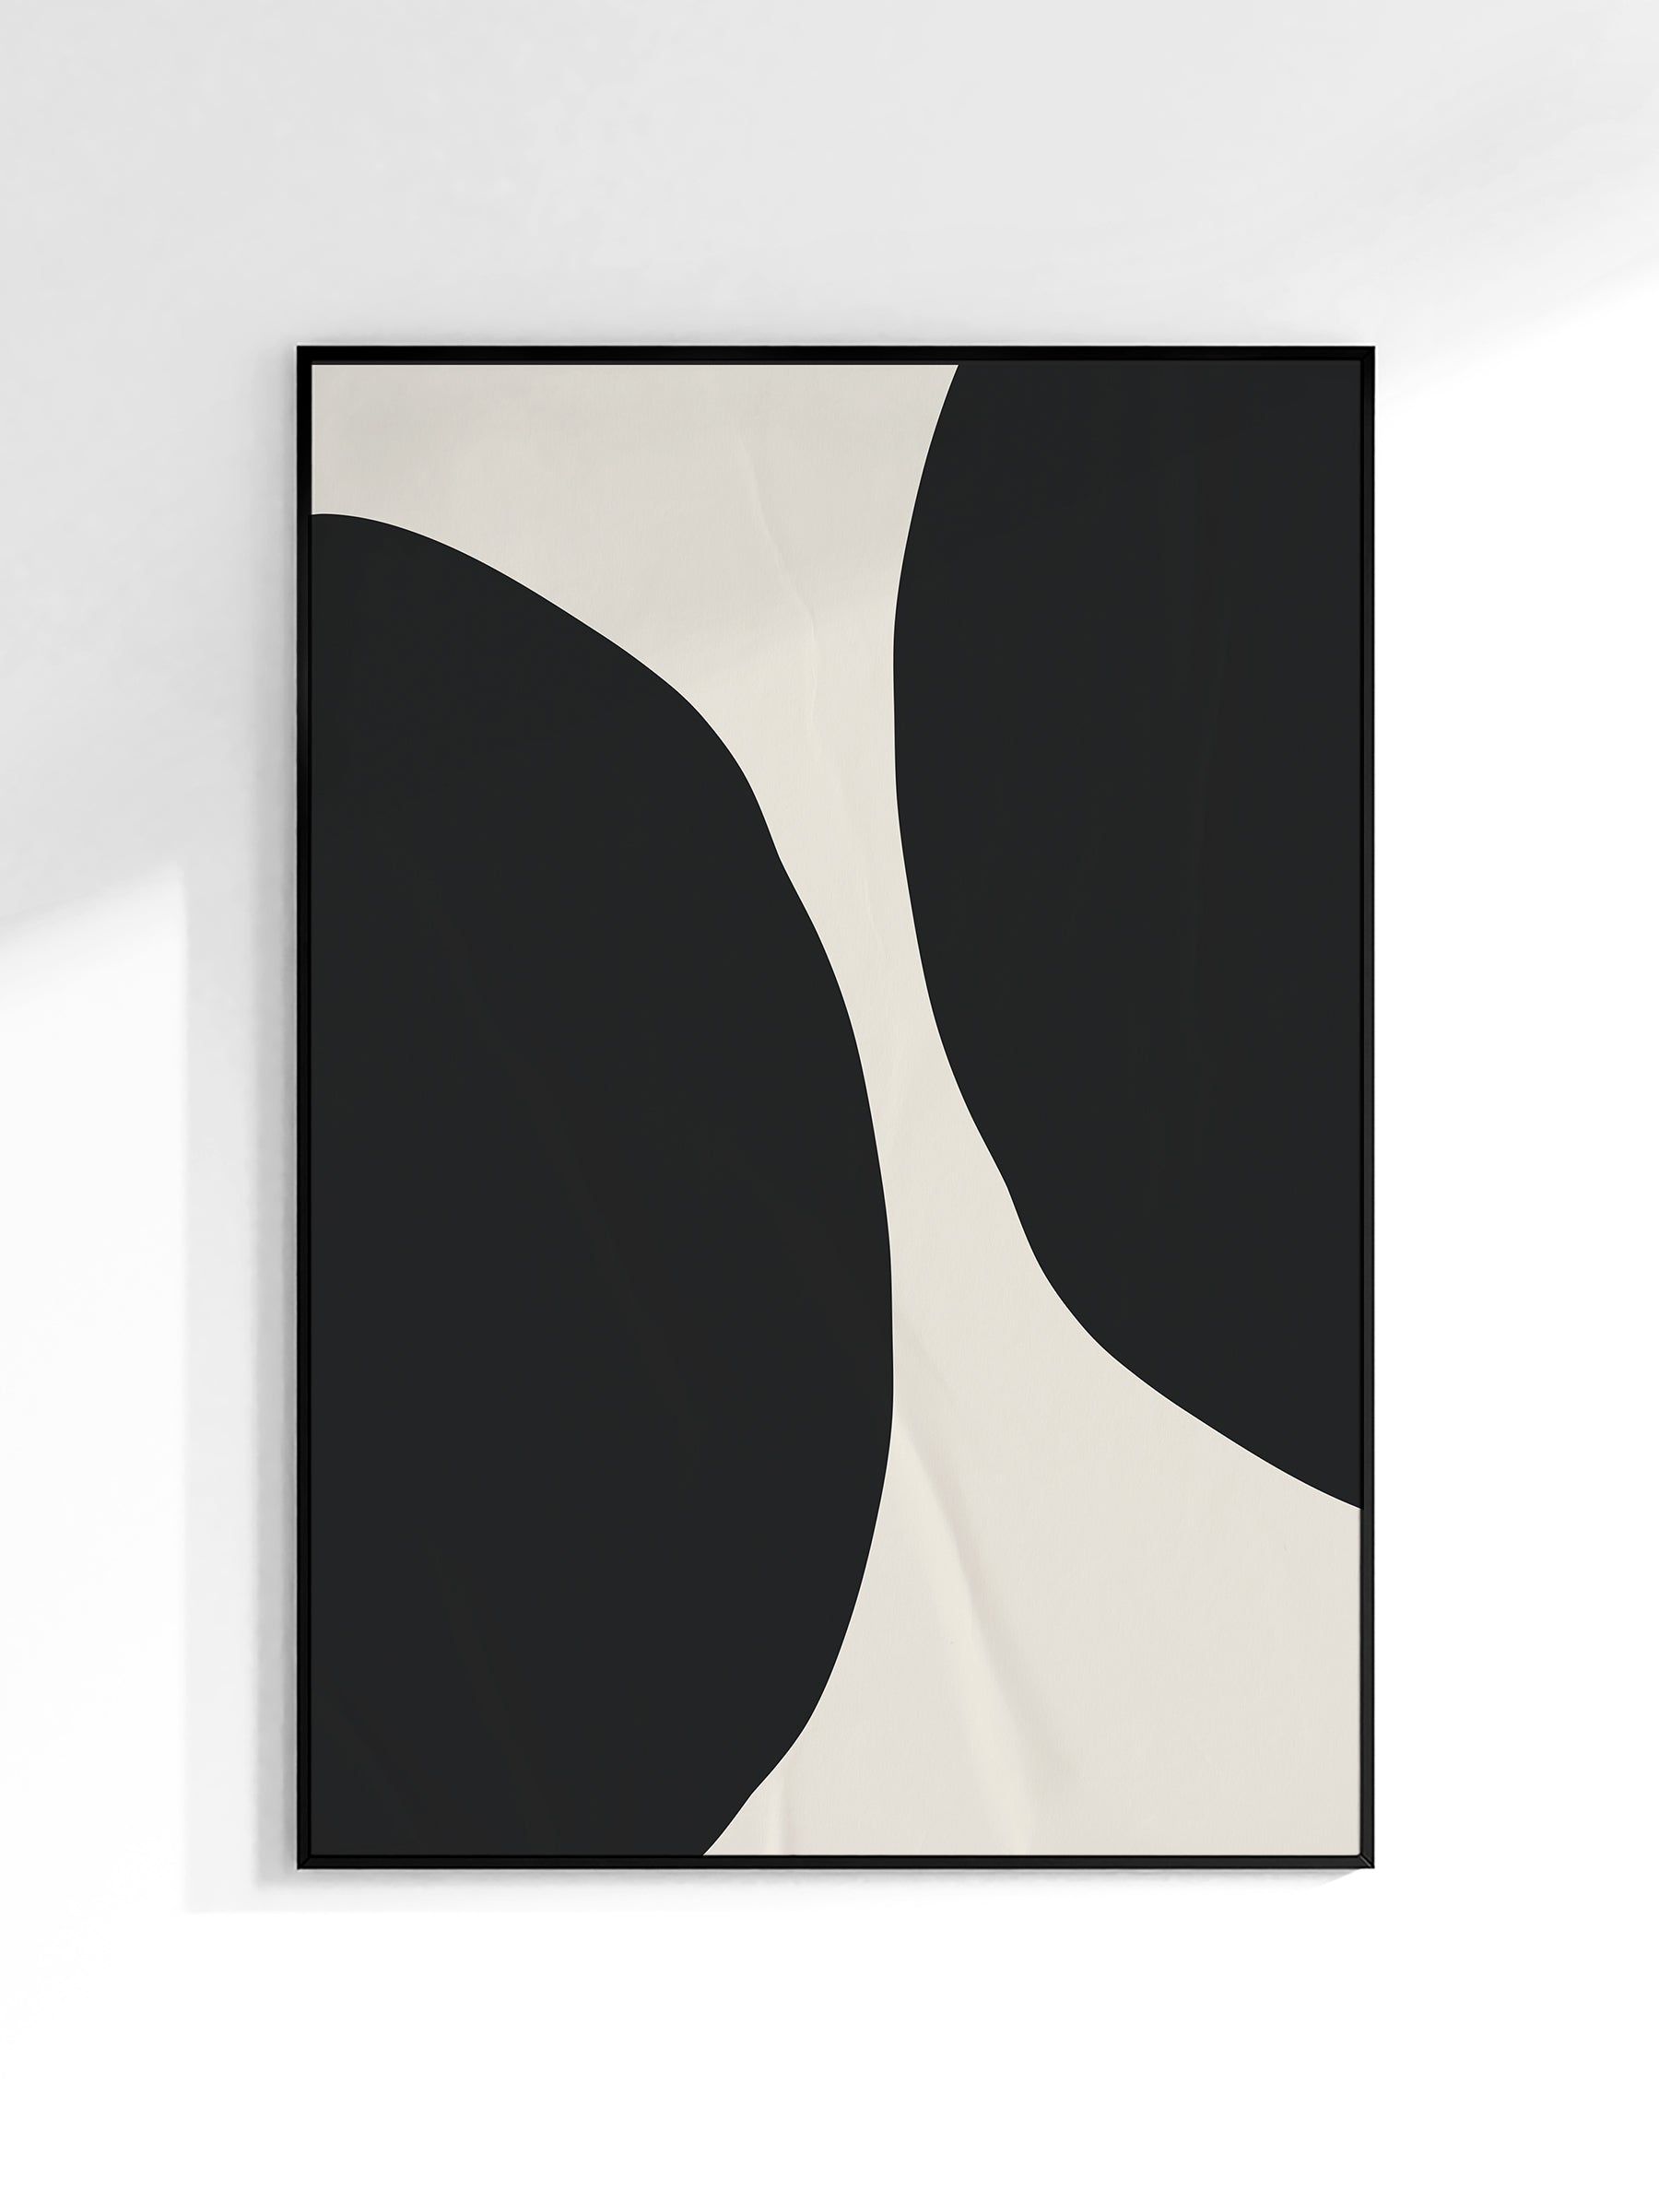 huisje van sanne abstract art poster met geografische beige, zwart en witte vormehuisje van sanne abstract art poster met geometrische beige, zwart en witte vormen